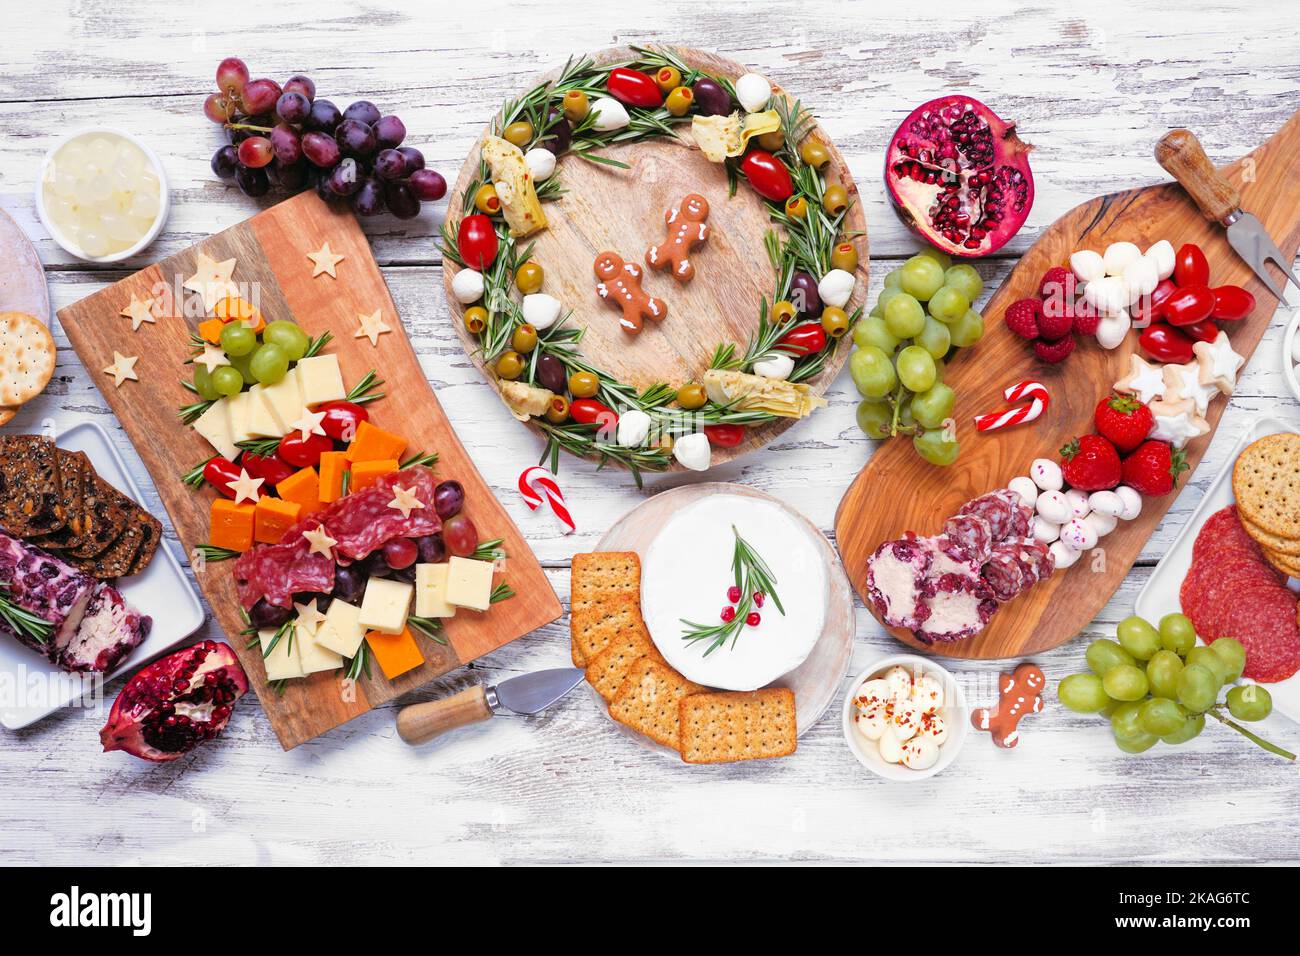 Weihnachtliche Tischszene auf weißem Holzhintergrund. Auswahl an Käse- und Fleischgerichten. Weihnachtsbaum, Kranz und Zuckerrohr arrangieren Stockfoto